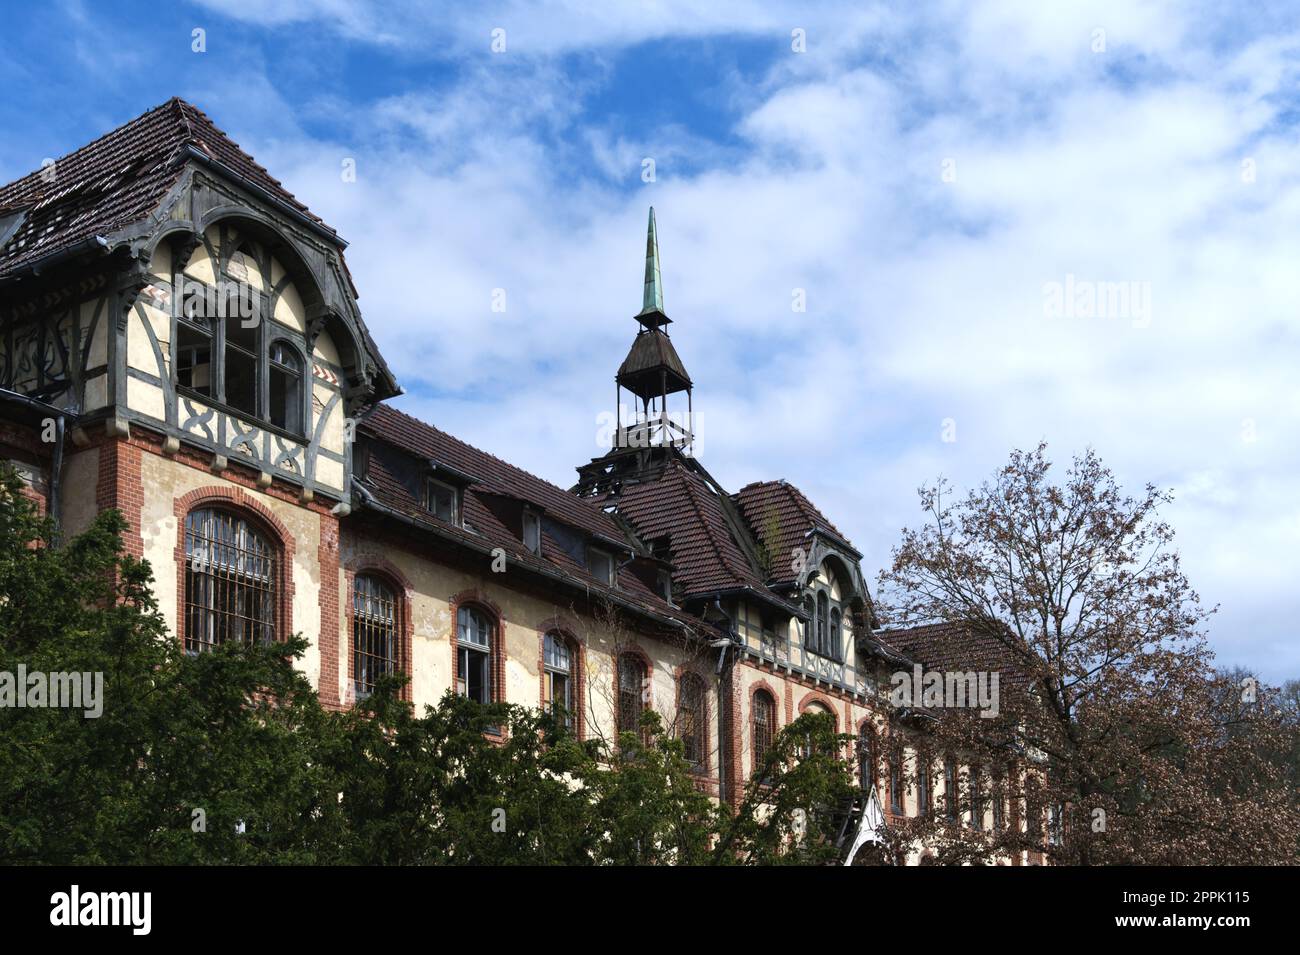 Verlassenes historisches Gebäude im deutschen Krankenhaus Horrorszene gruselige Lage Stockfoto